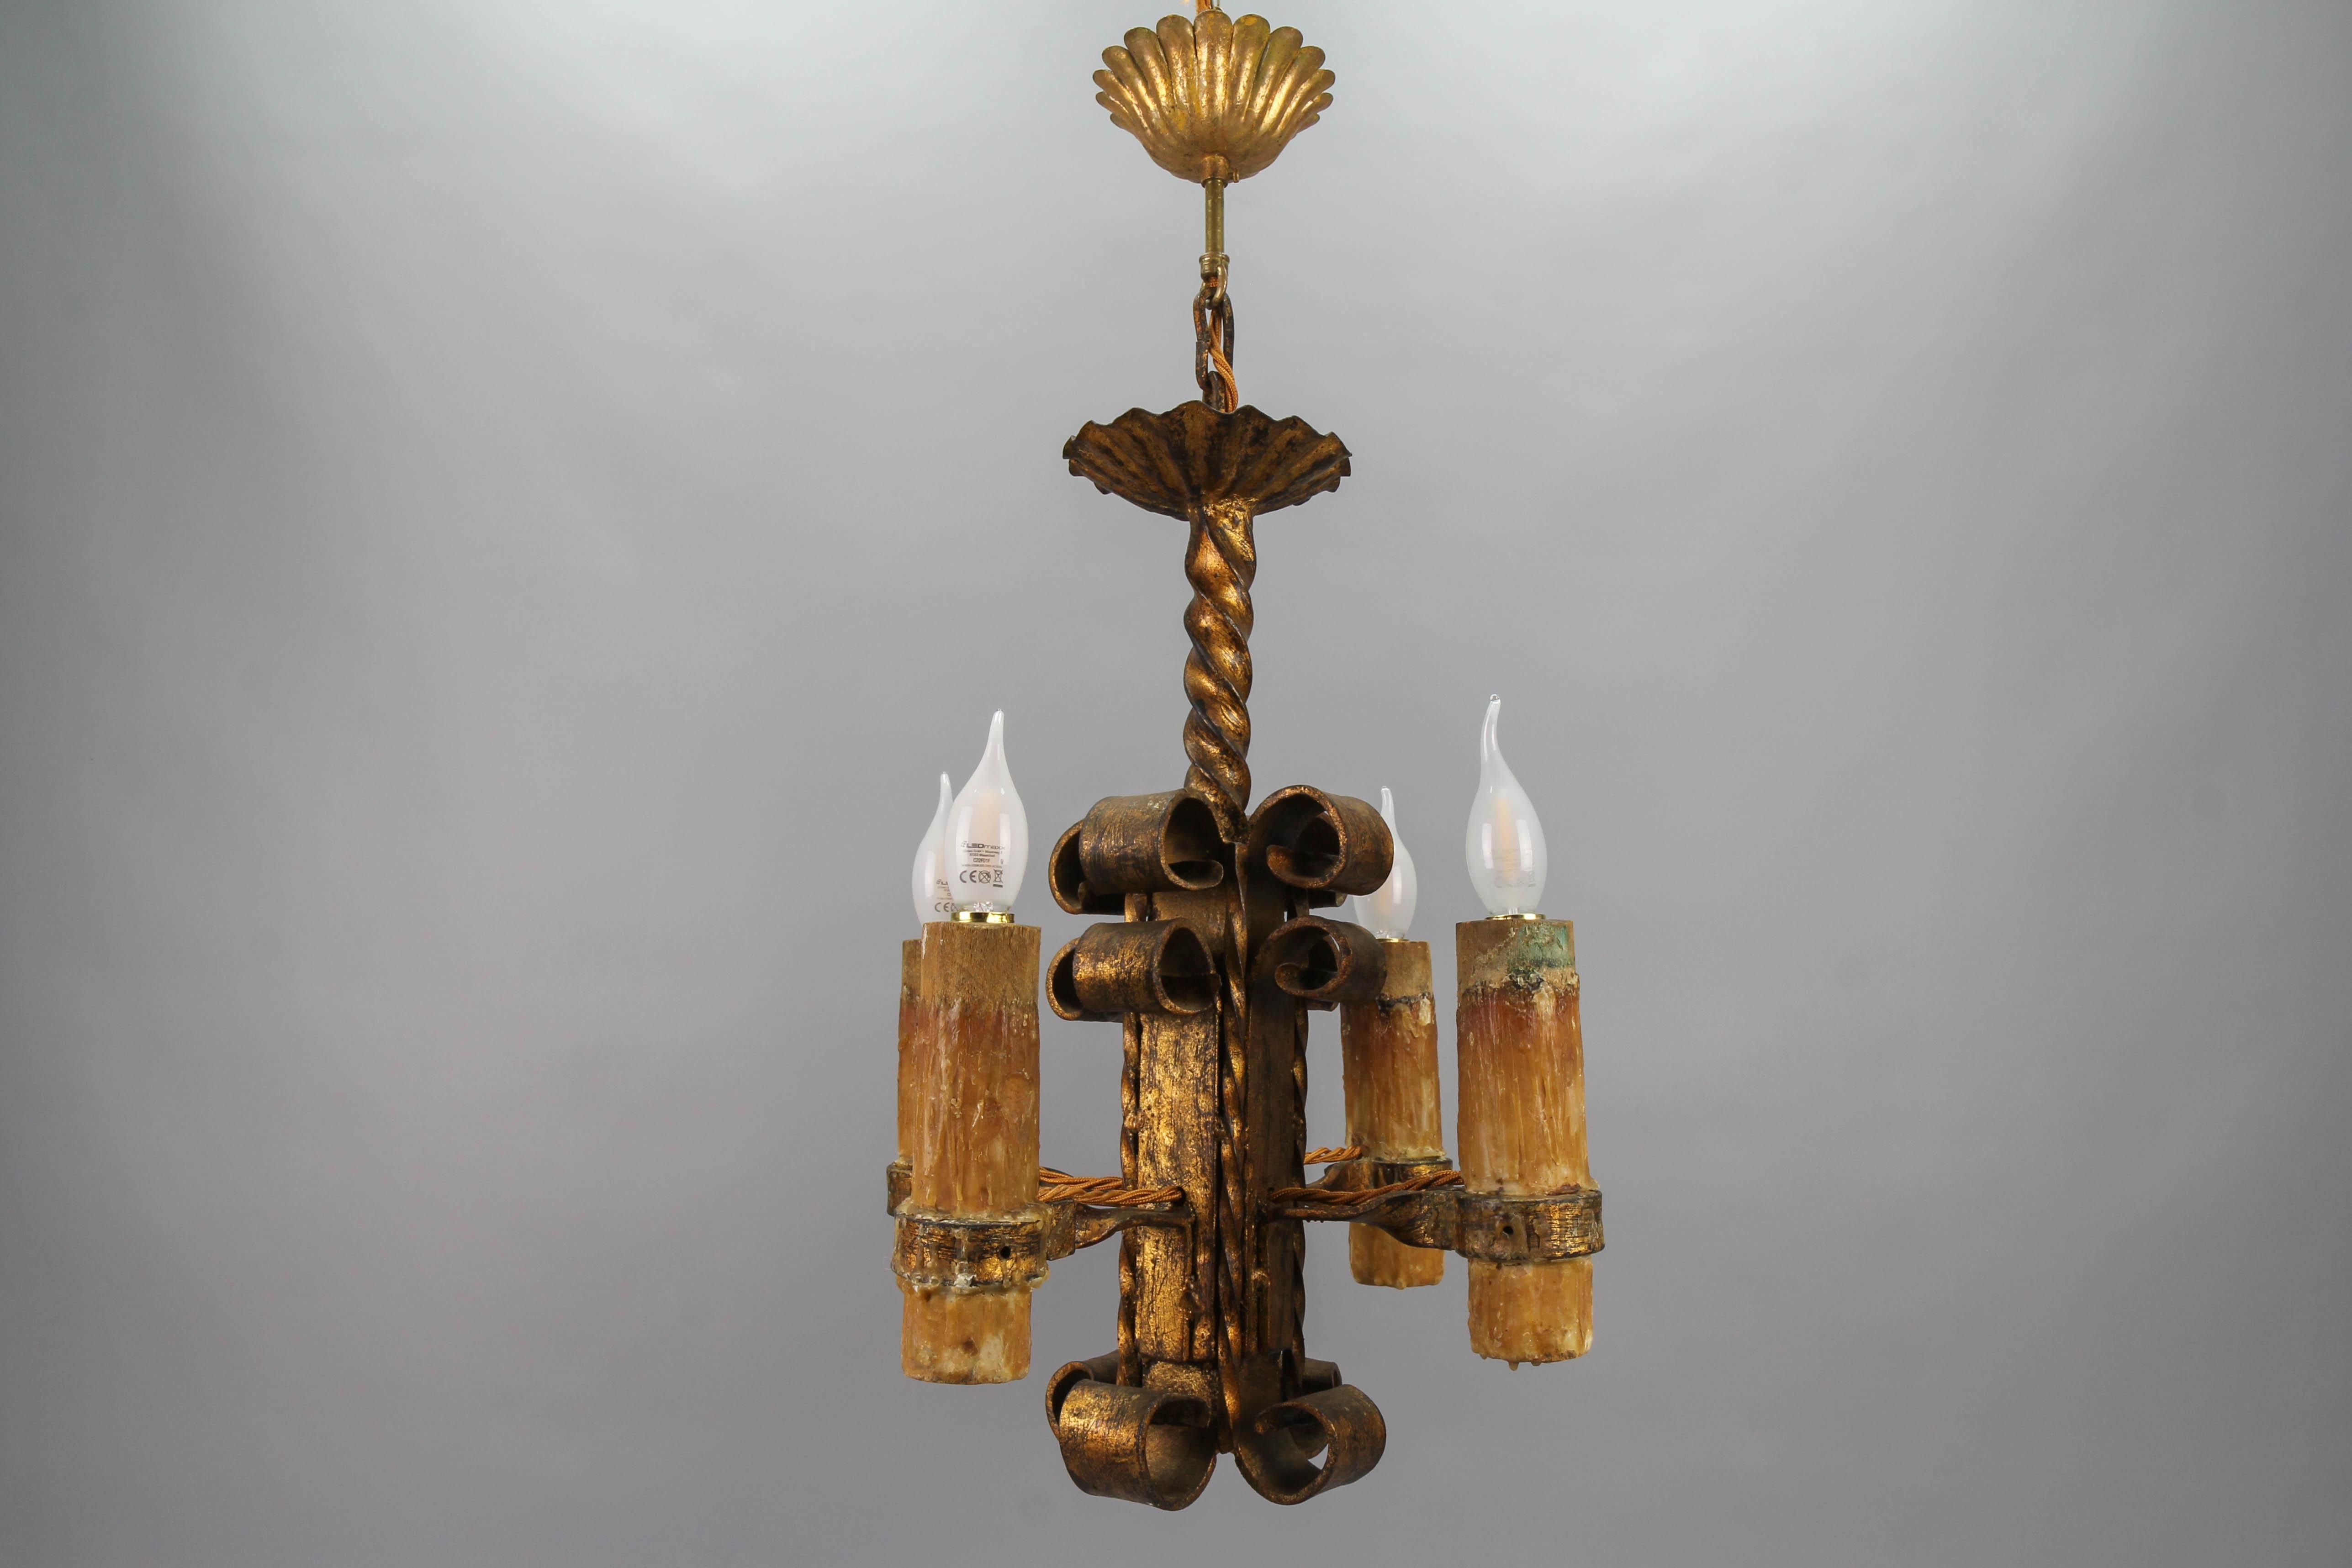 Lustre à quatre lumières de style médiéval en fer forgé doré de la fin du XIXe siècle
Impressionnant et lourd lustre à quatre lumières en fer forgé doré de style médiéval, datant de la fin du XIXe siècle. Les grands manchons décoratifs en bois sont